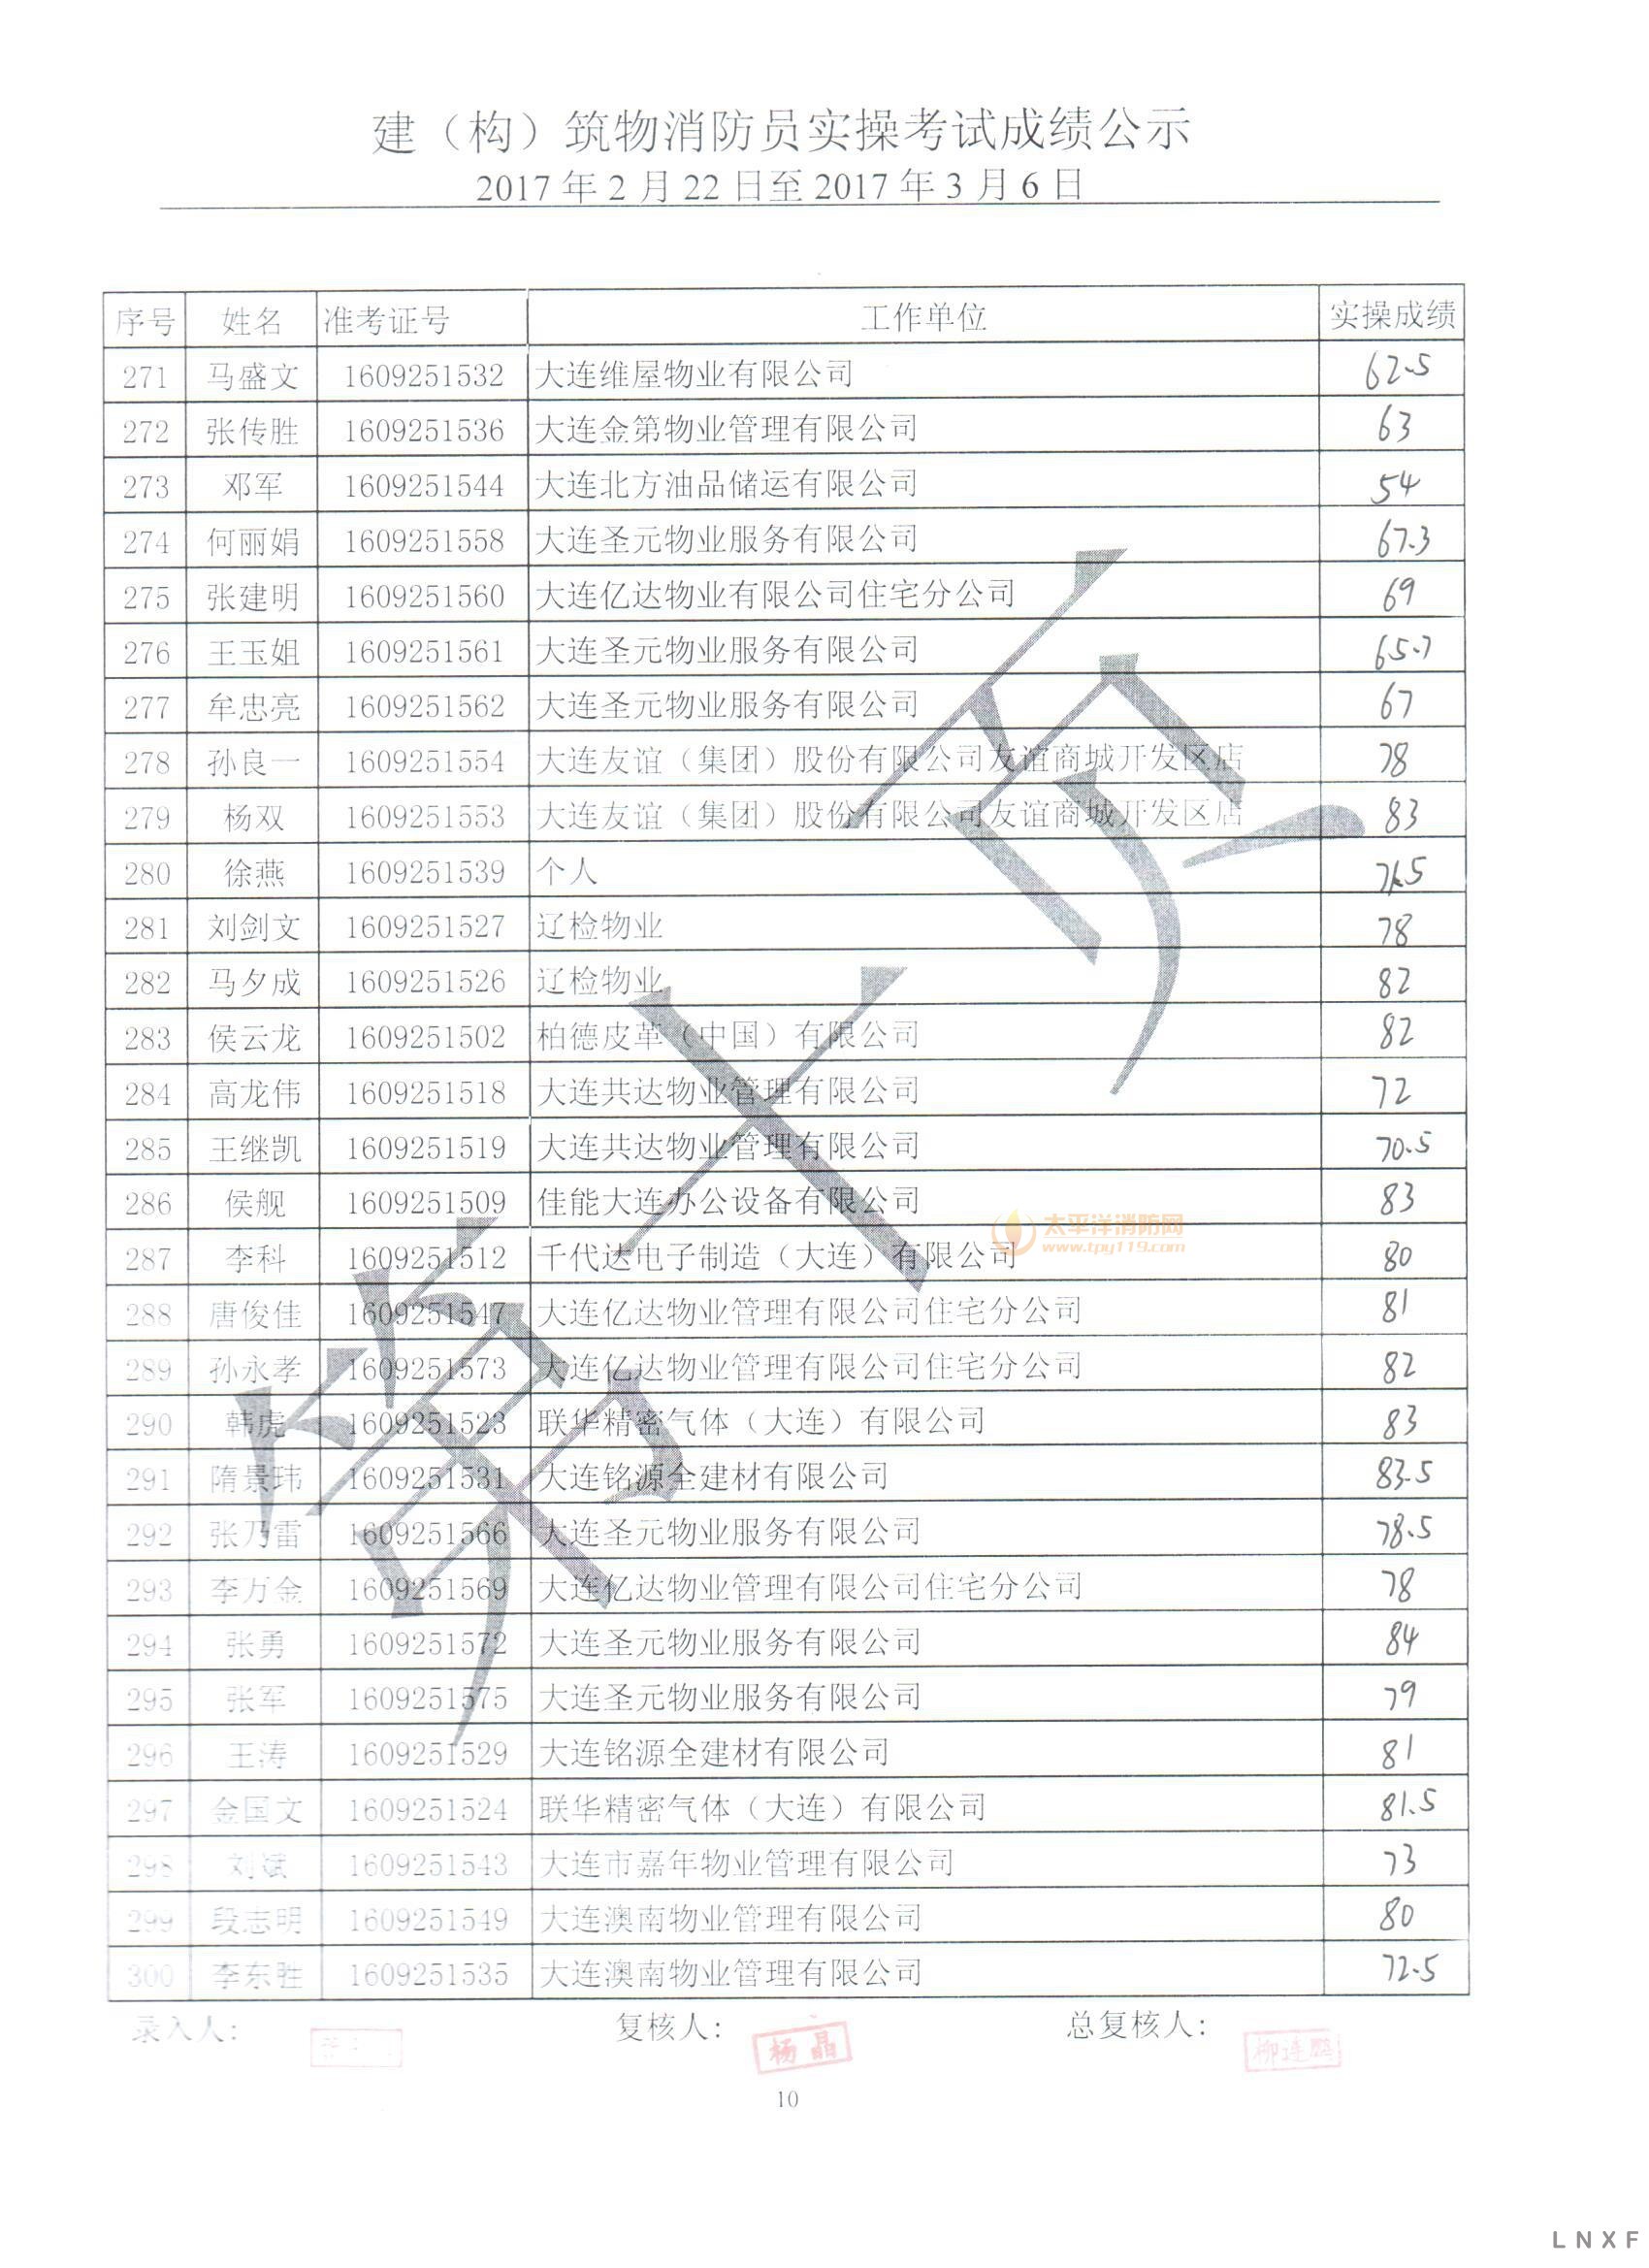 【实操成绩】辽宁2017年（2.22-03.06） 建构筑物消防员实操考试成绩公示